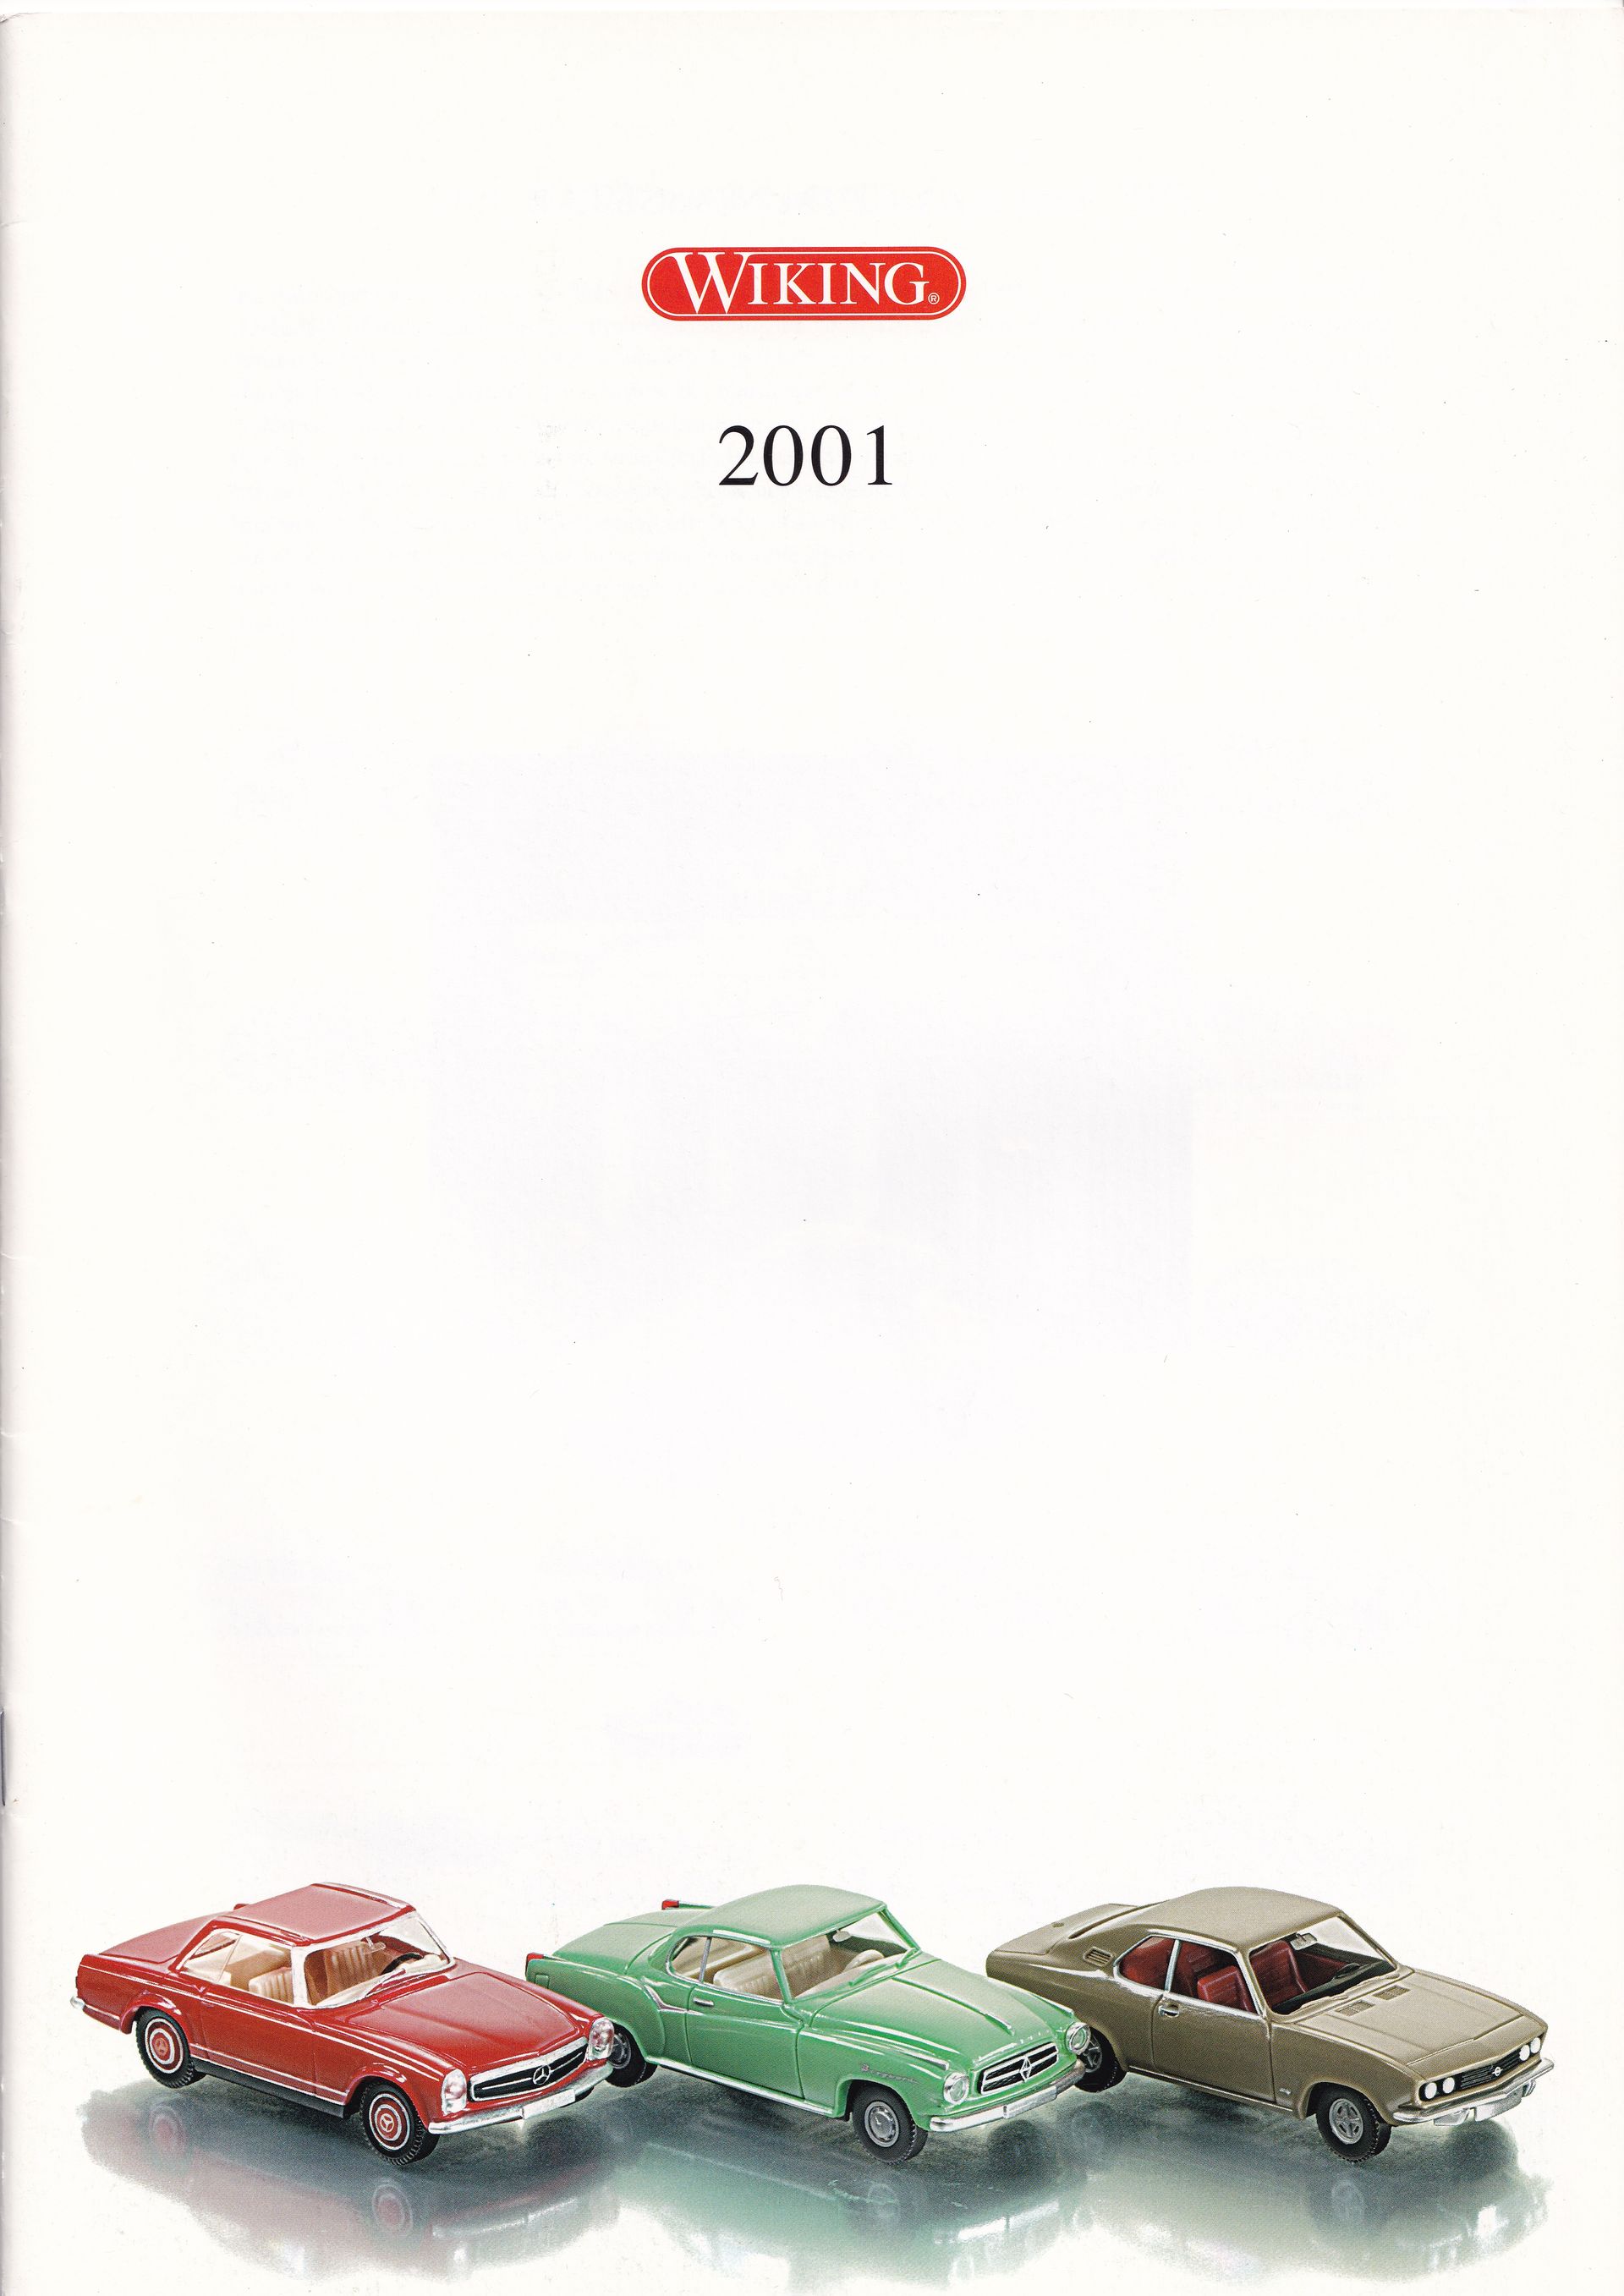 Wiking Catalogue 2001